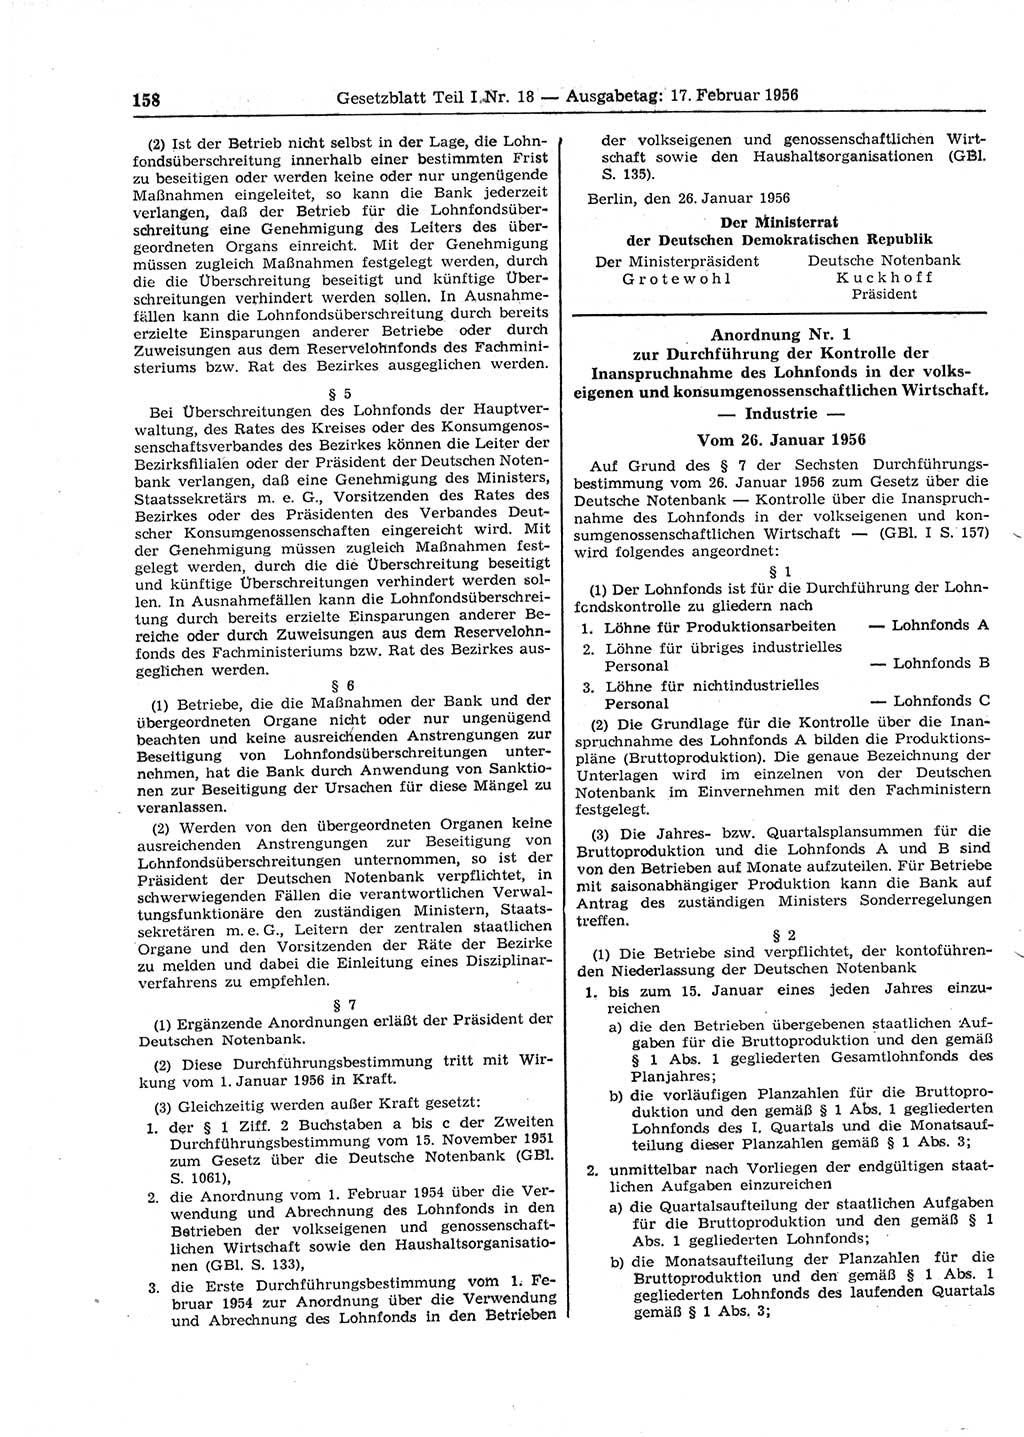 Gesetzblatt (GBl.) der Deutschen Demokratischen Republik (DDR) Teil Ⅰ 1956, Seite 158 (GBl. DDR Ⅰ 1956, S. 158)